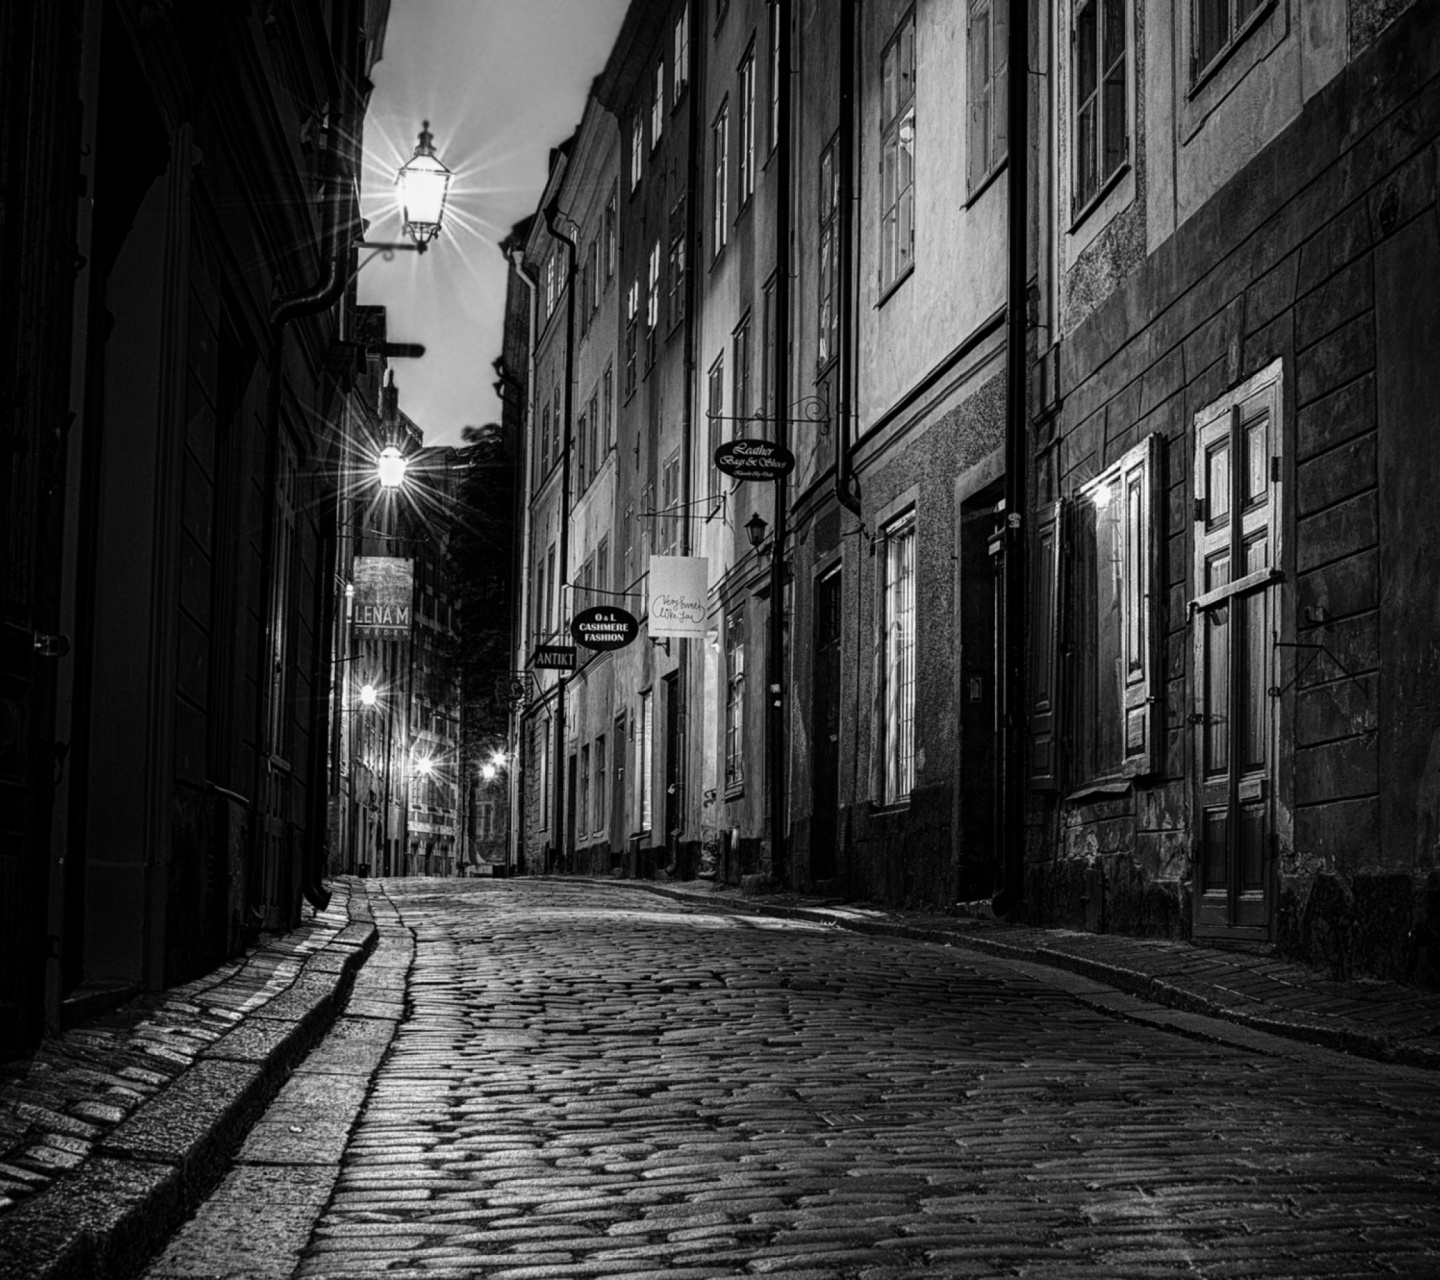 Sverige, Sett paving street in Stockholm screenshot #1 1440x1280